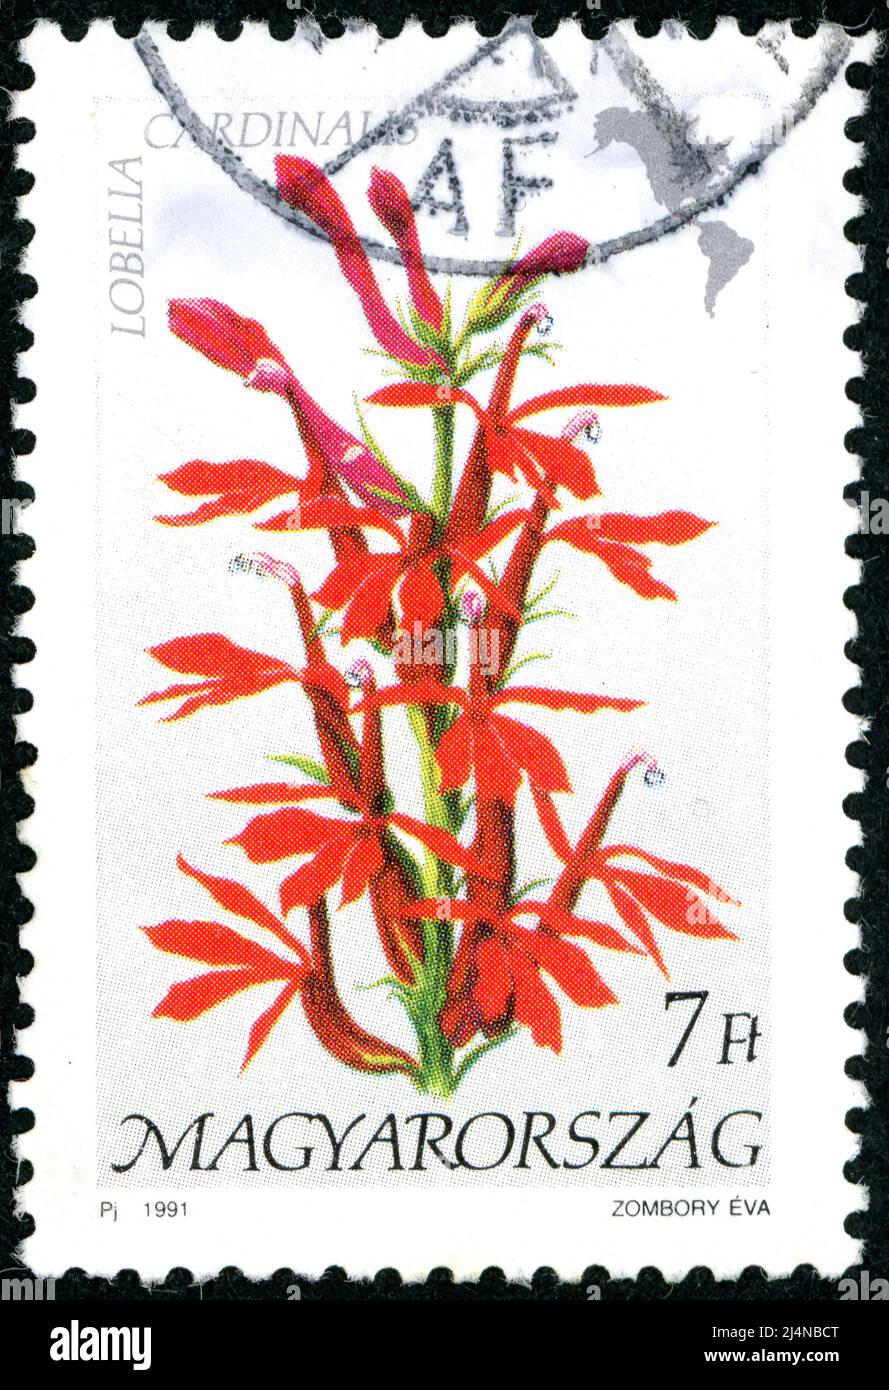 HONGRIE - VERS 1991: Timbre-poste imprimé en Hongrie montrant la flore de l'Amérique, Lobelia cardinalis, vers 1991 Banque D'Images